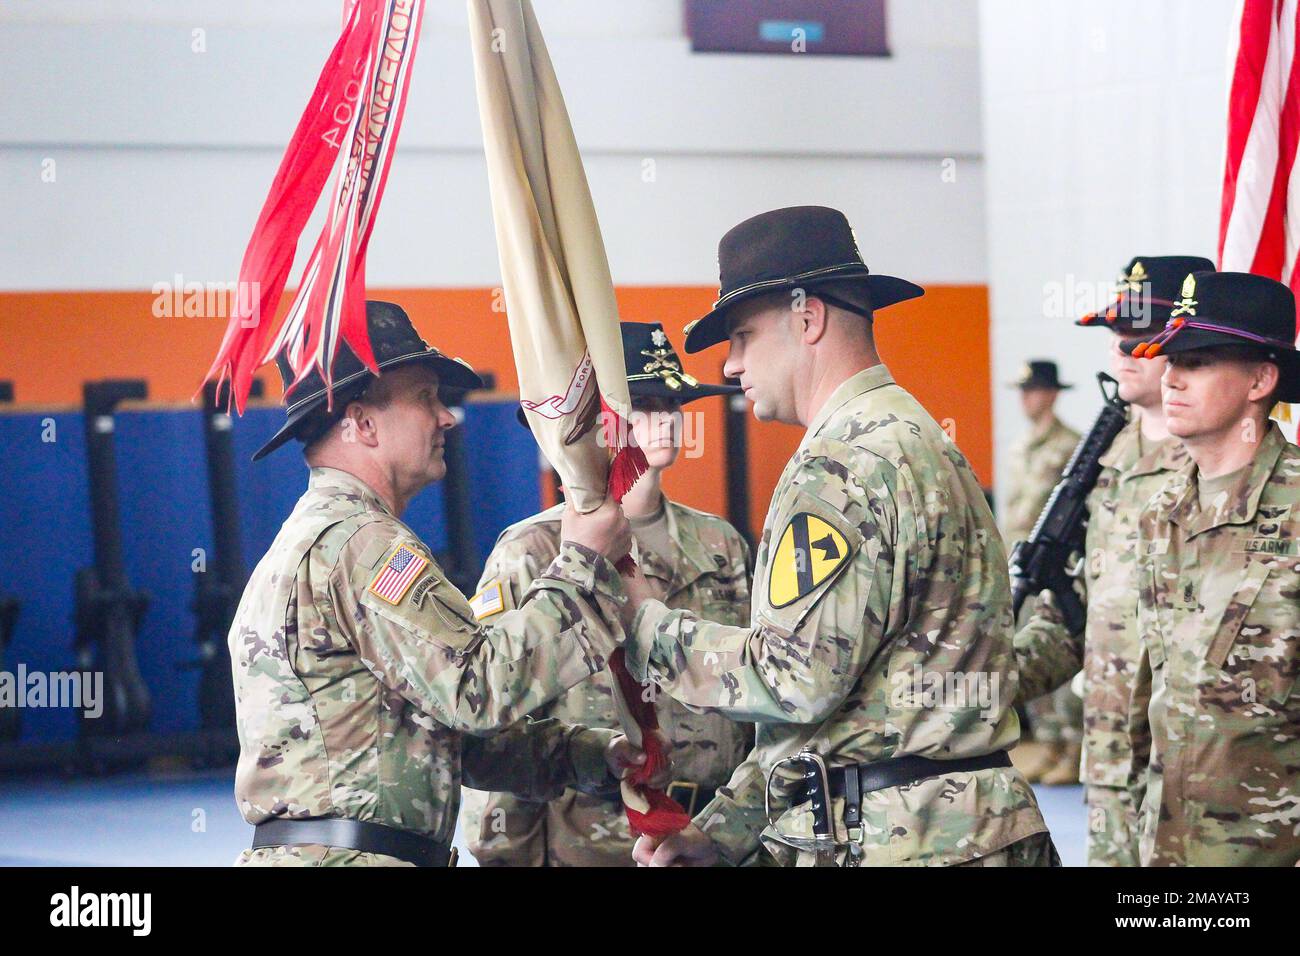 Il col. Nick Ryan restituisce i 615th colori del battaglione di supporto dell'aviazione al col. Reggie Harper durante la cerimonia di cambio del battaglione, Storck Bracks, Germania, 8 giugno 2022. Foto Stock